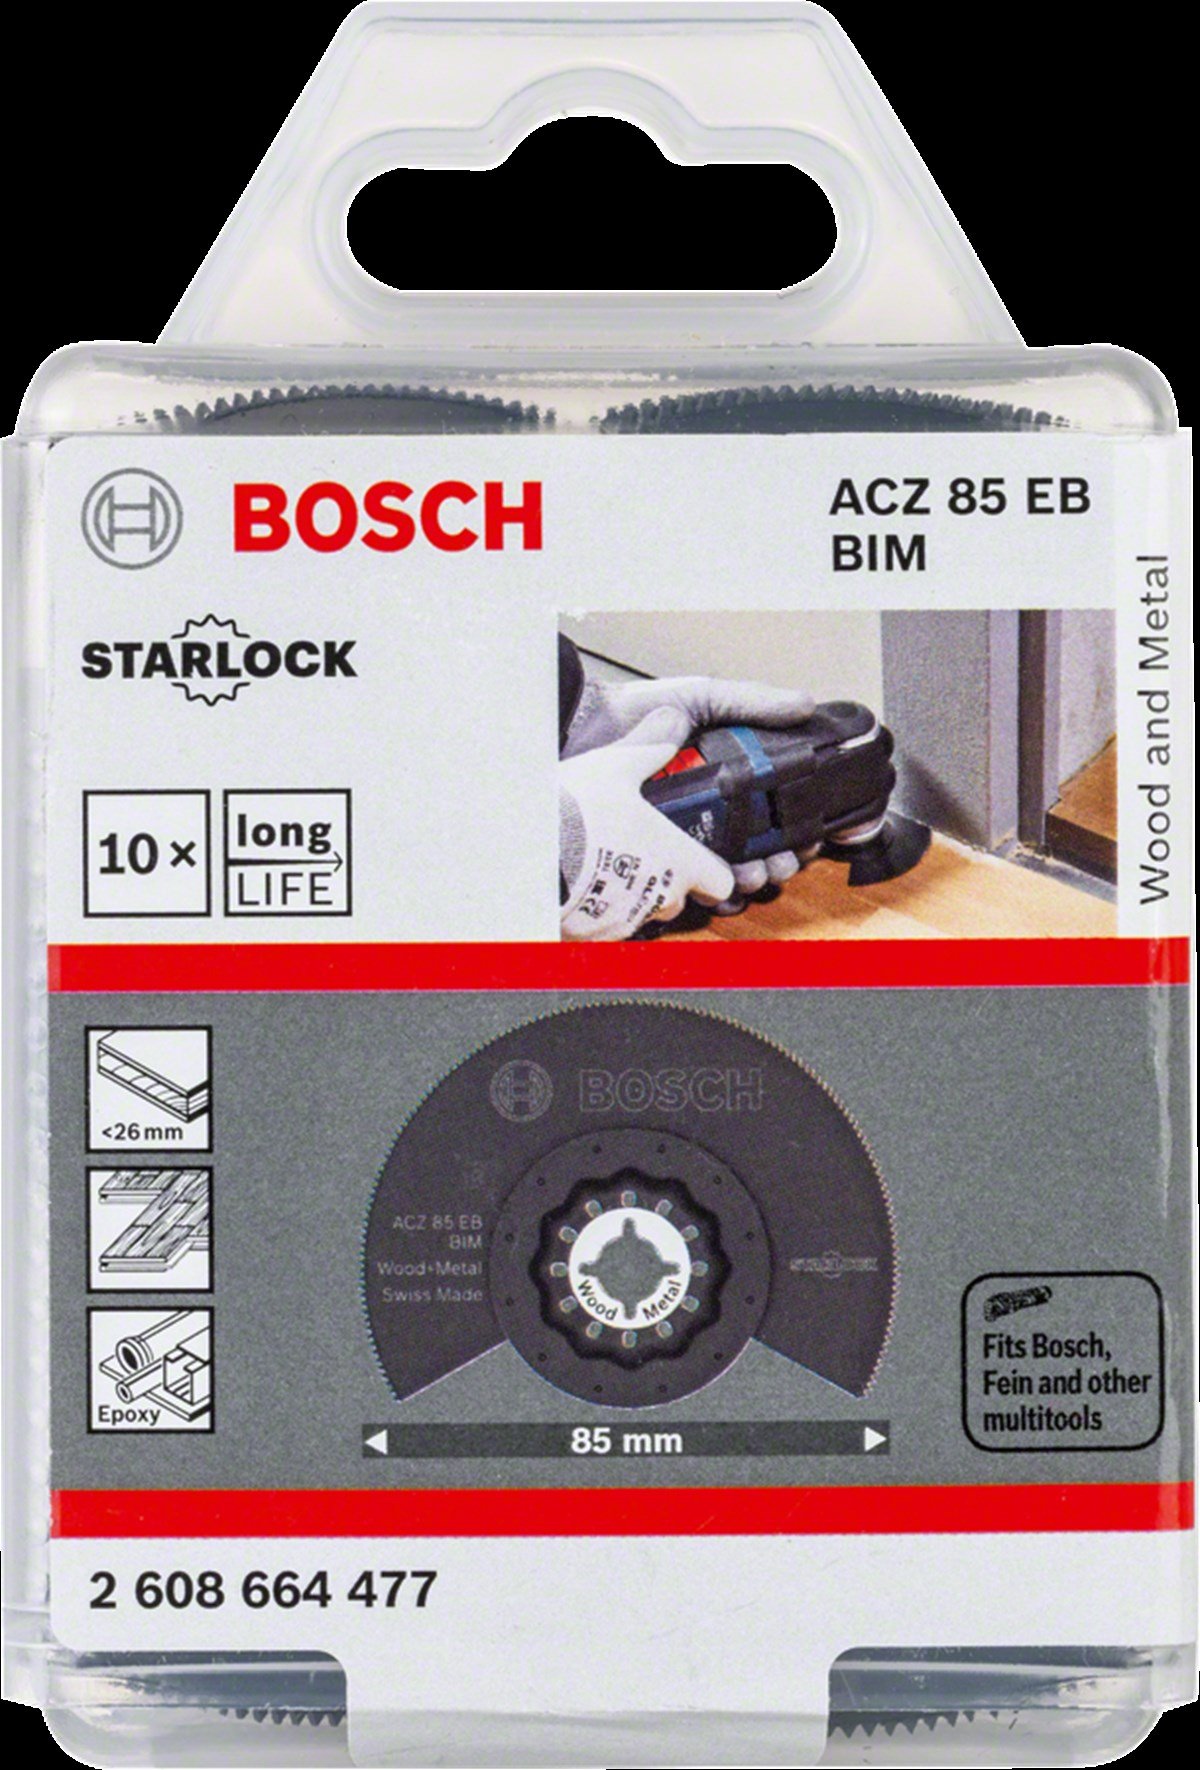 Bosch - Starlock - ACZ 85 EB - BIM Ahşap ve Metal İçin Segman Testere  Bıçağı, Bombeli 10'lu | Kocaşaban Sınai ve Tıbbi Gazlar Teknik Hırdavat